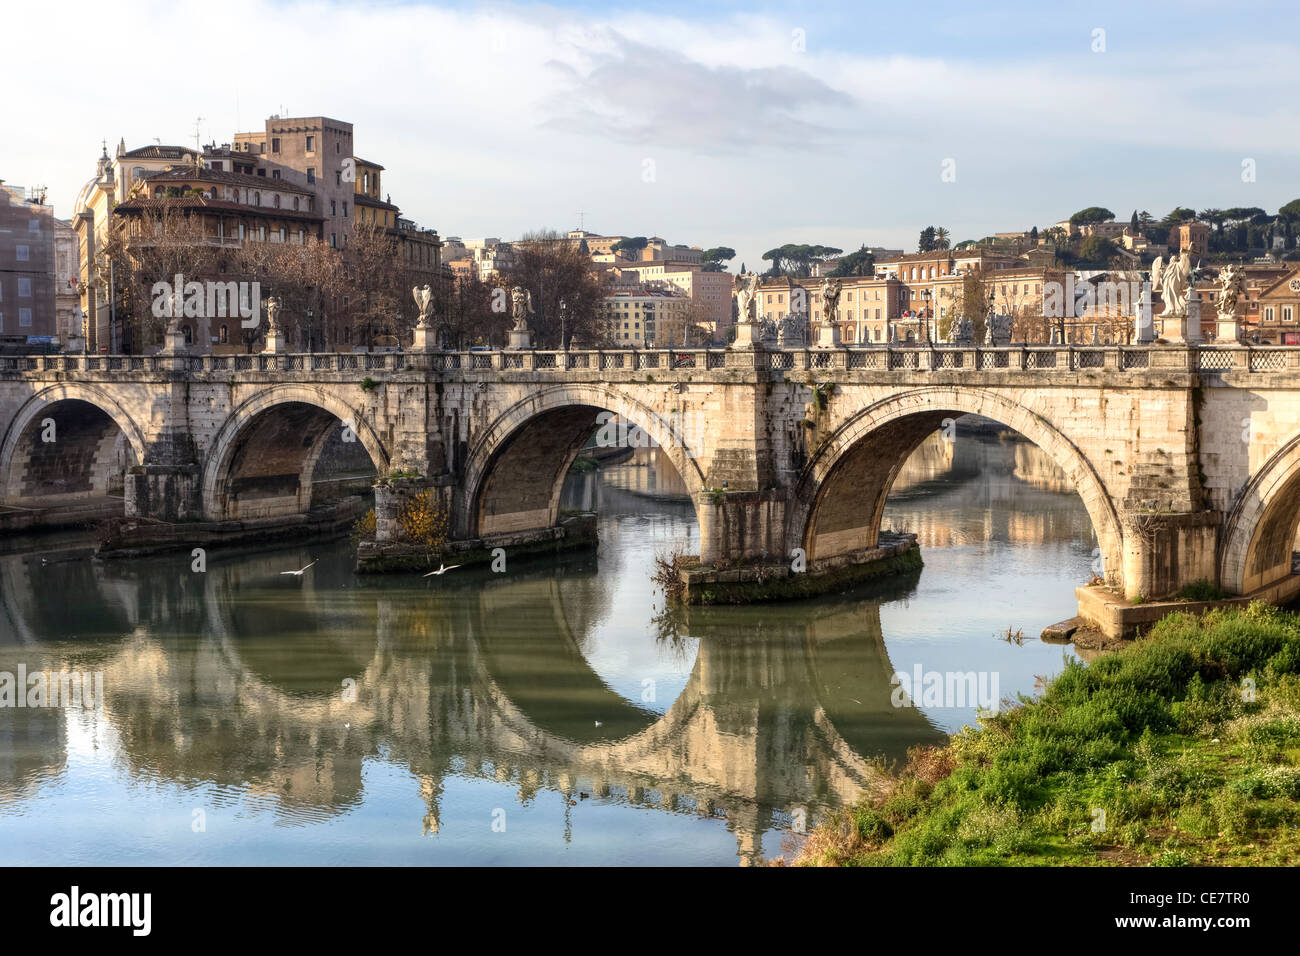 Die Engel Brücke über den Tiber direkt an das Castel Sant'Angelo und 10 Engel im Barockstil auf ihr Geländer eingerichtet hat. Stockfoto